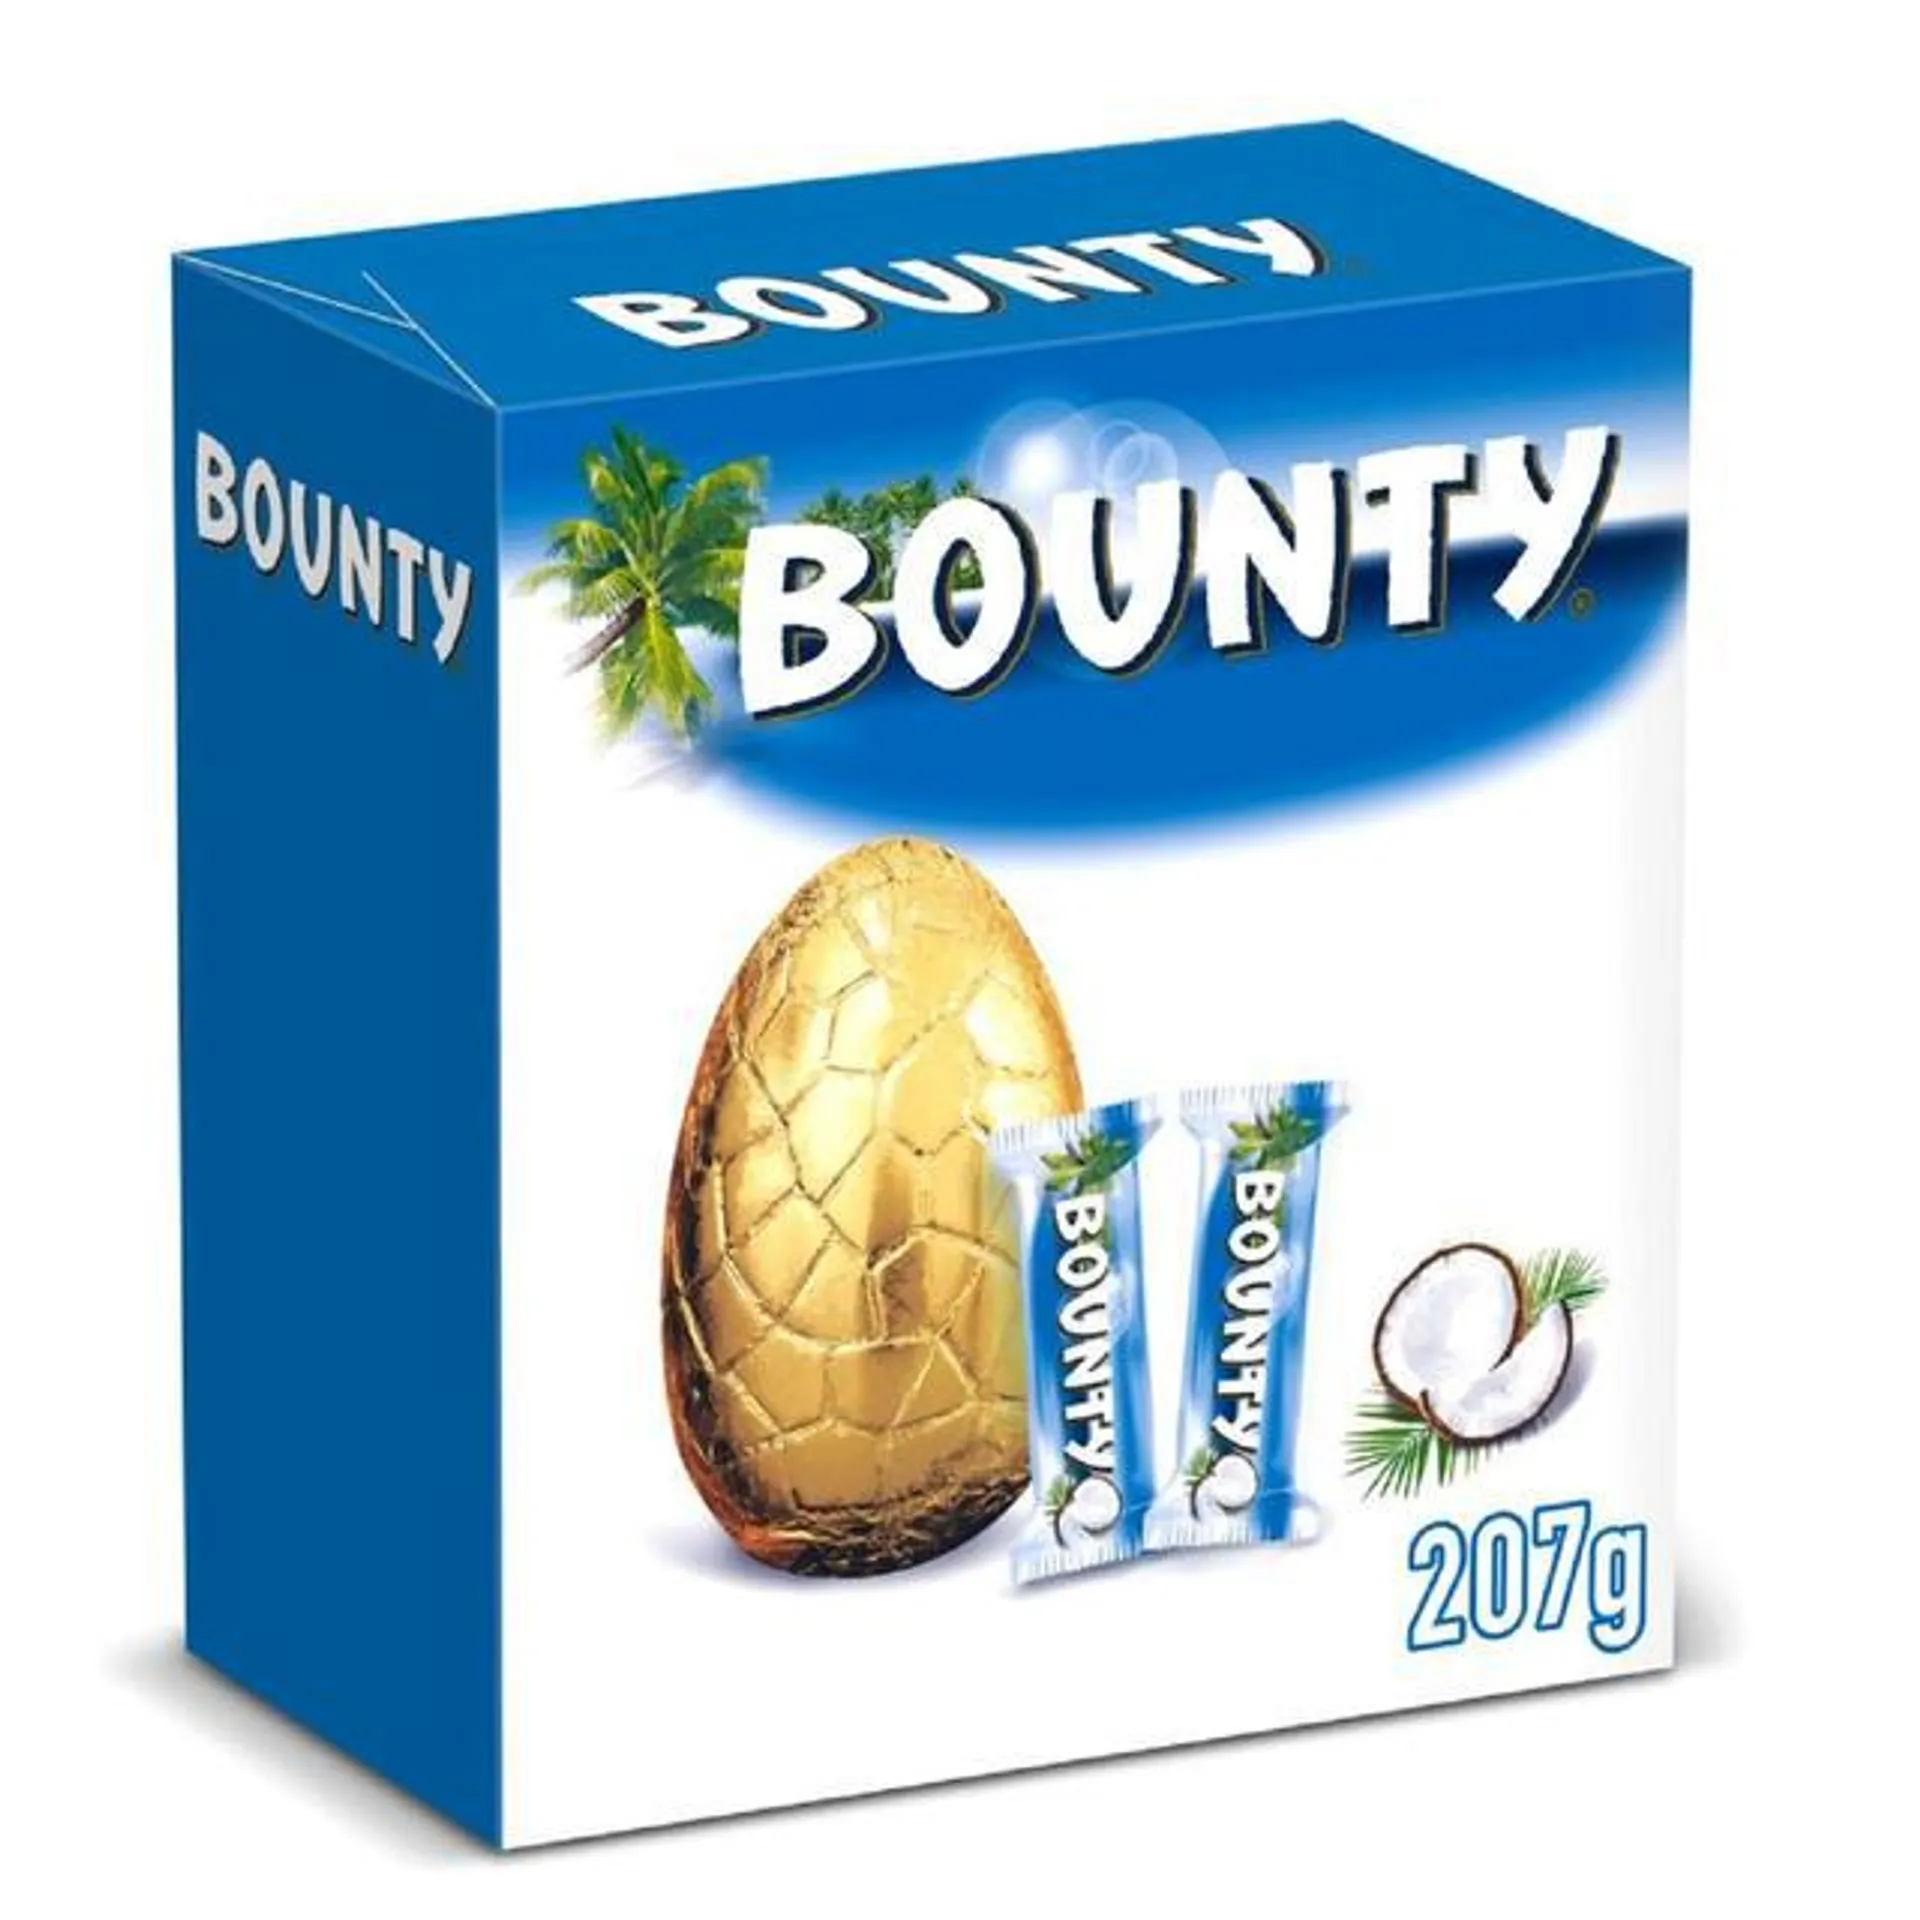 Bounty Large Easter Egg 207g